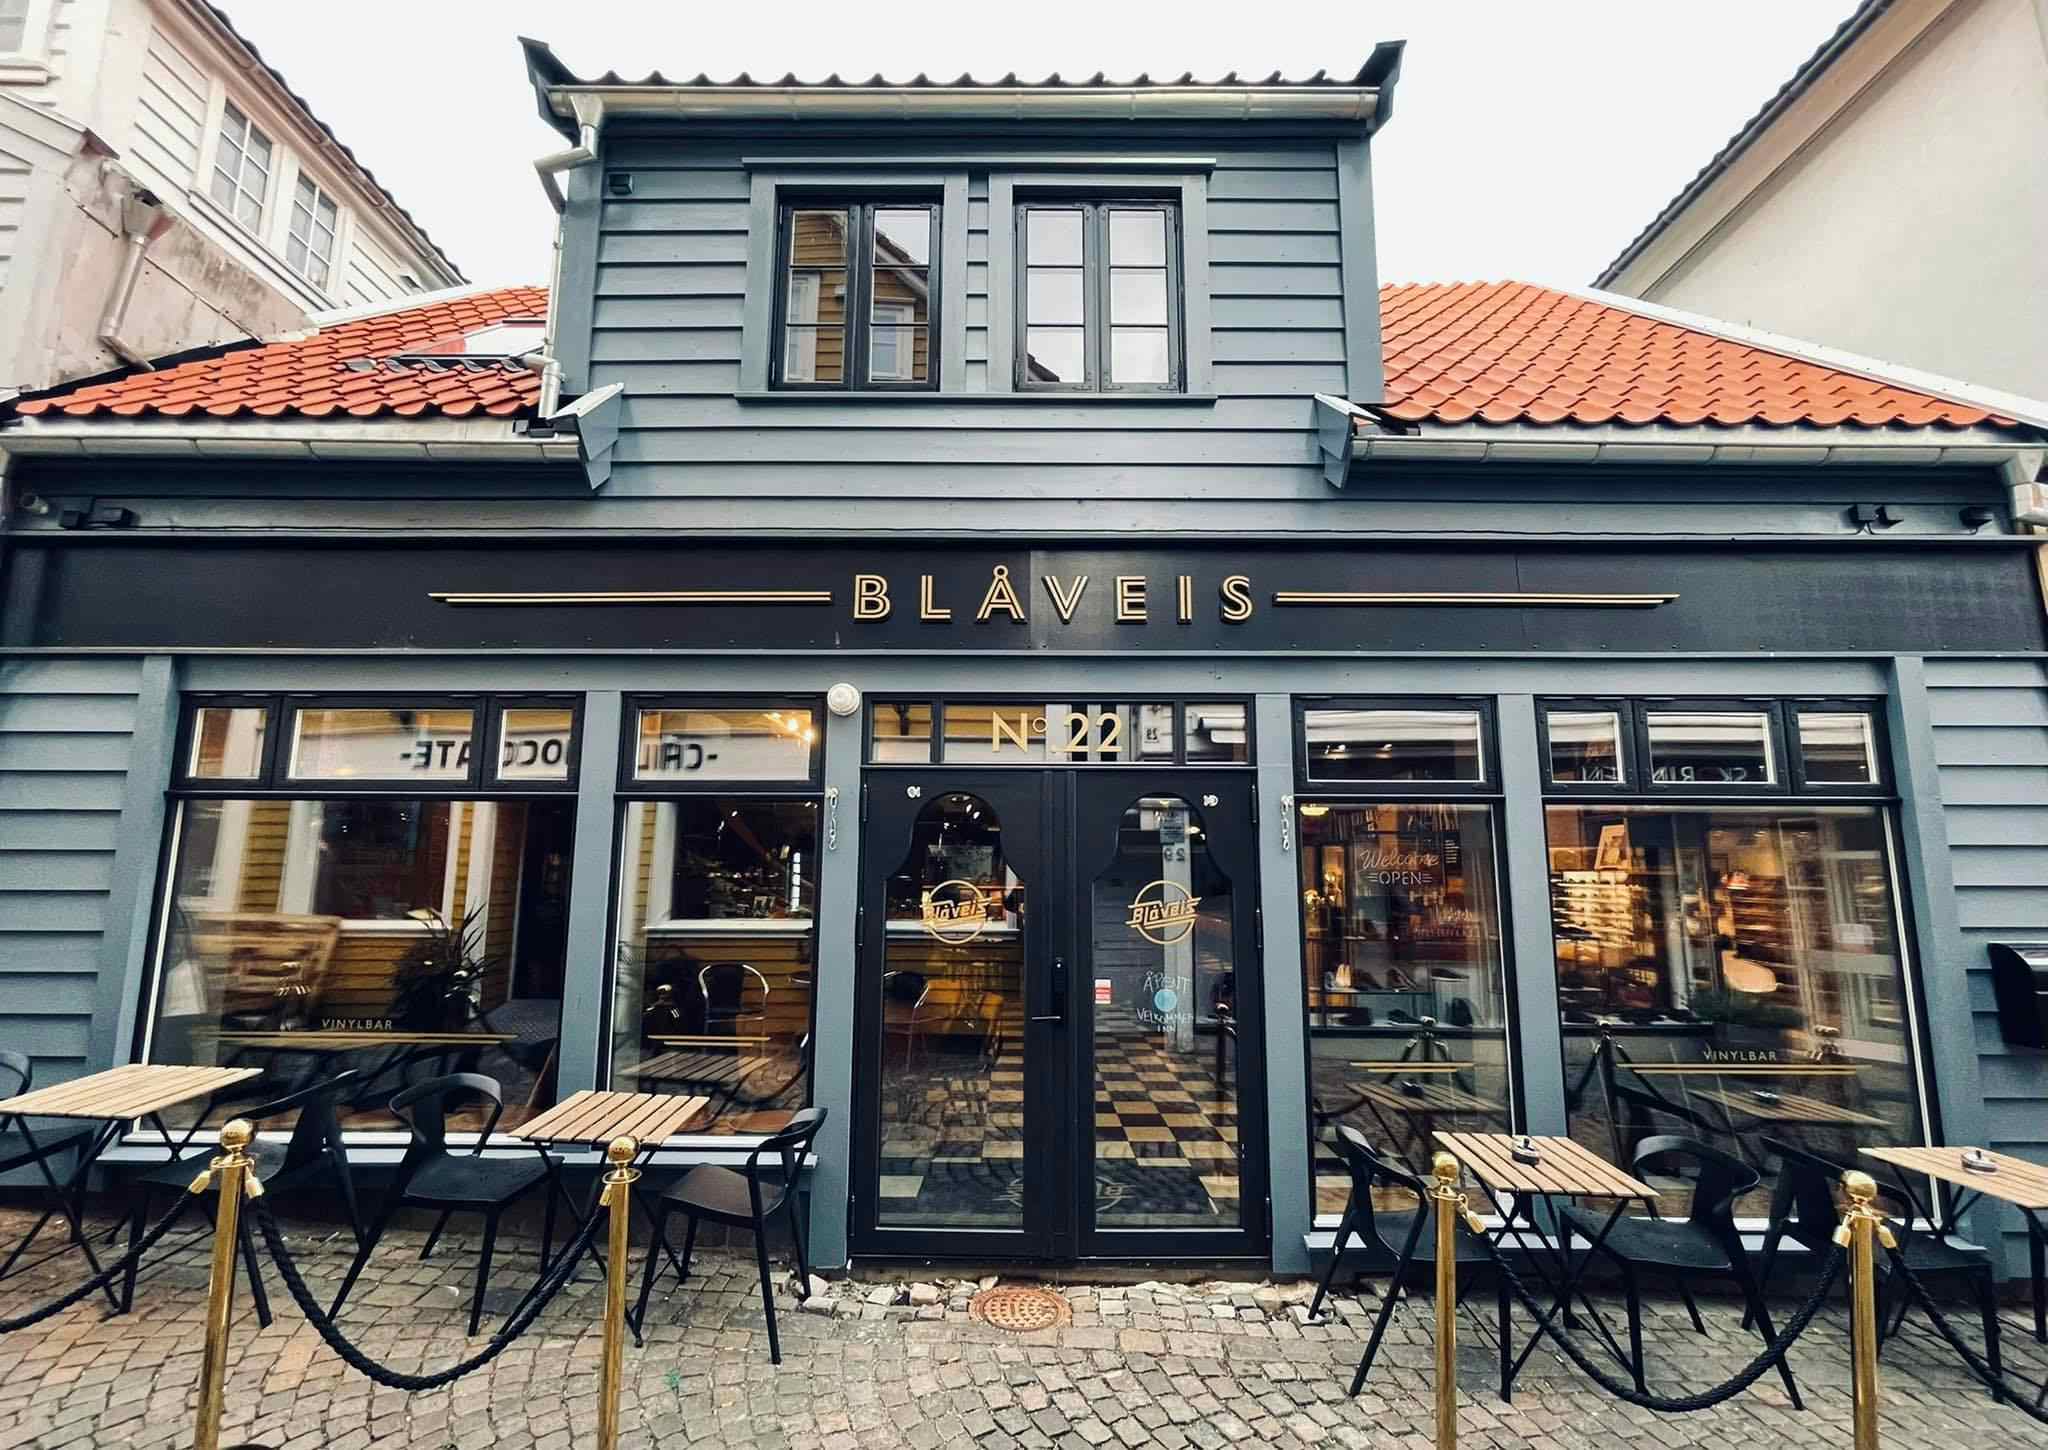 The facade of the bar Blåveis in Stavanger.